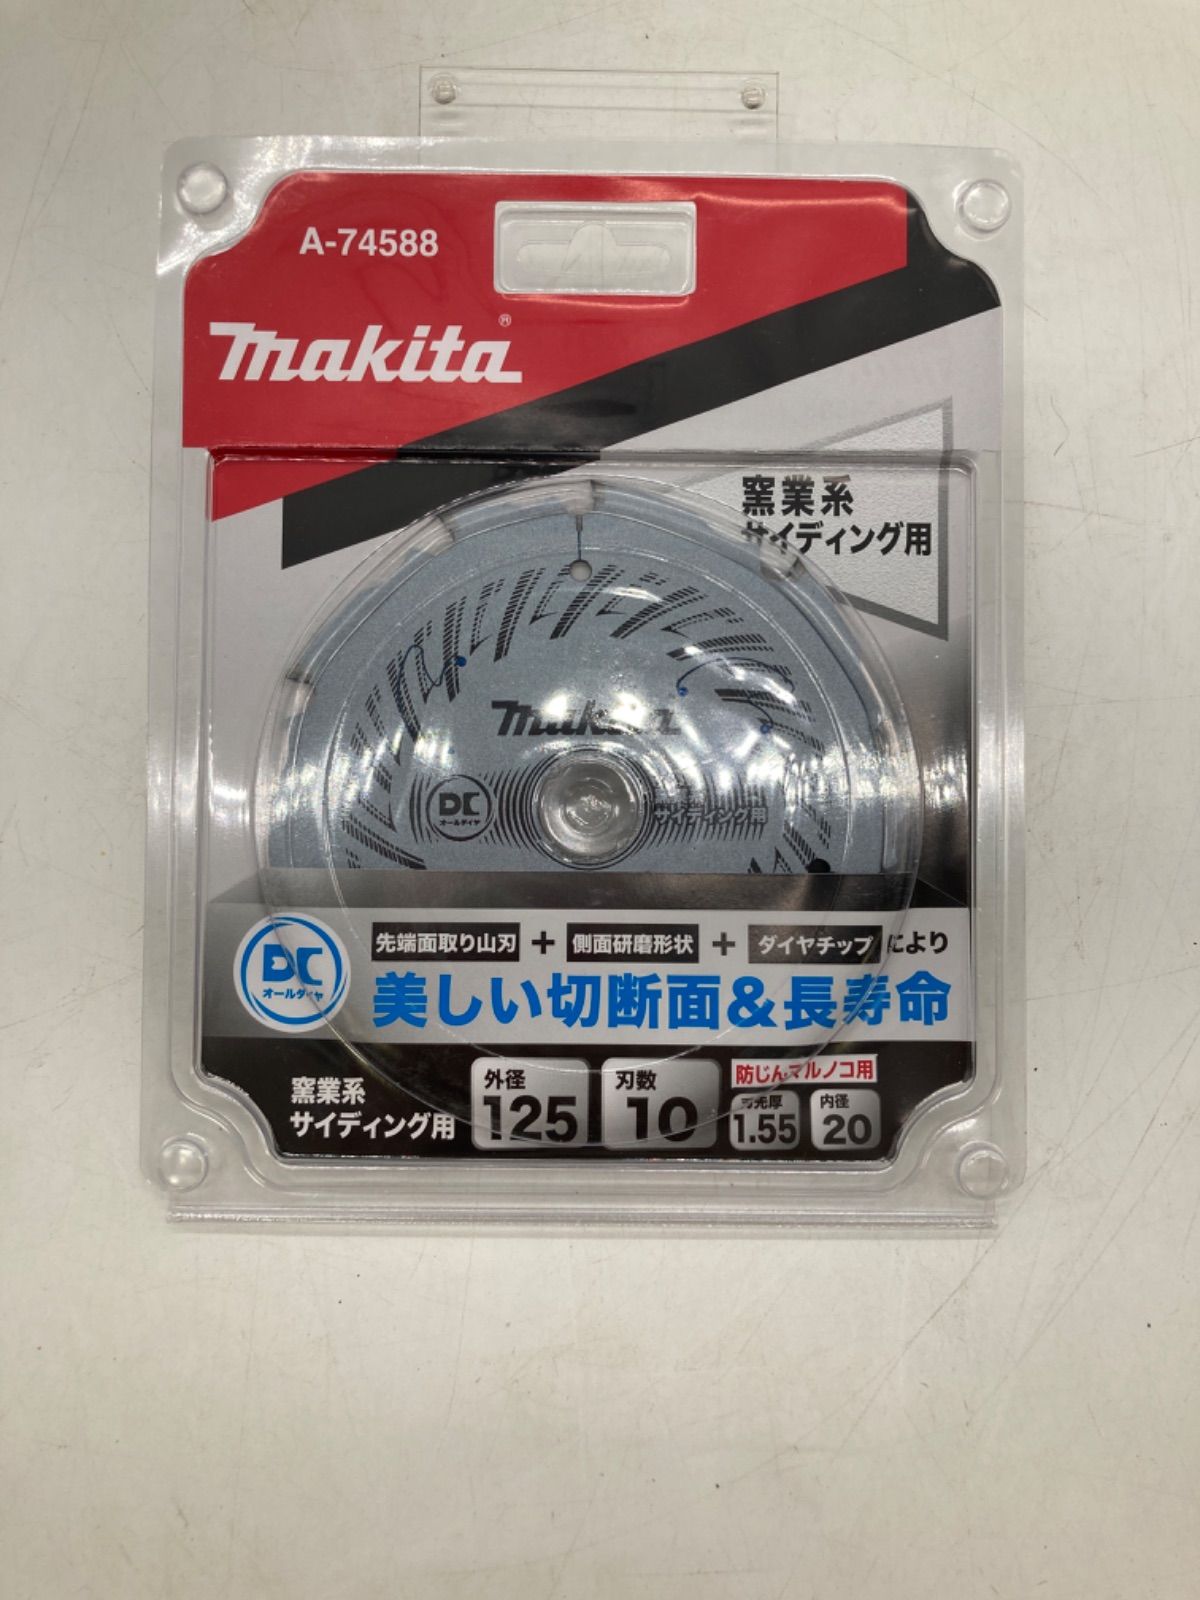 マキタ DCオールダイヤチップソー 125mm 窯業系サイディング用 A-74588